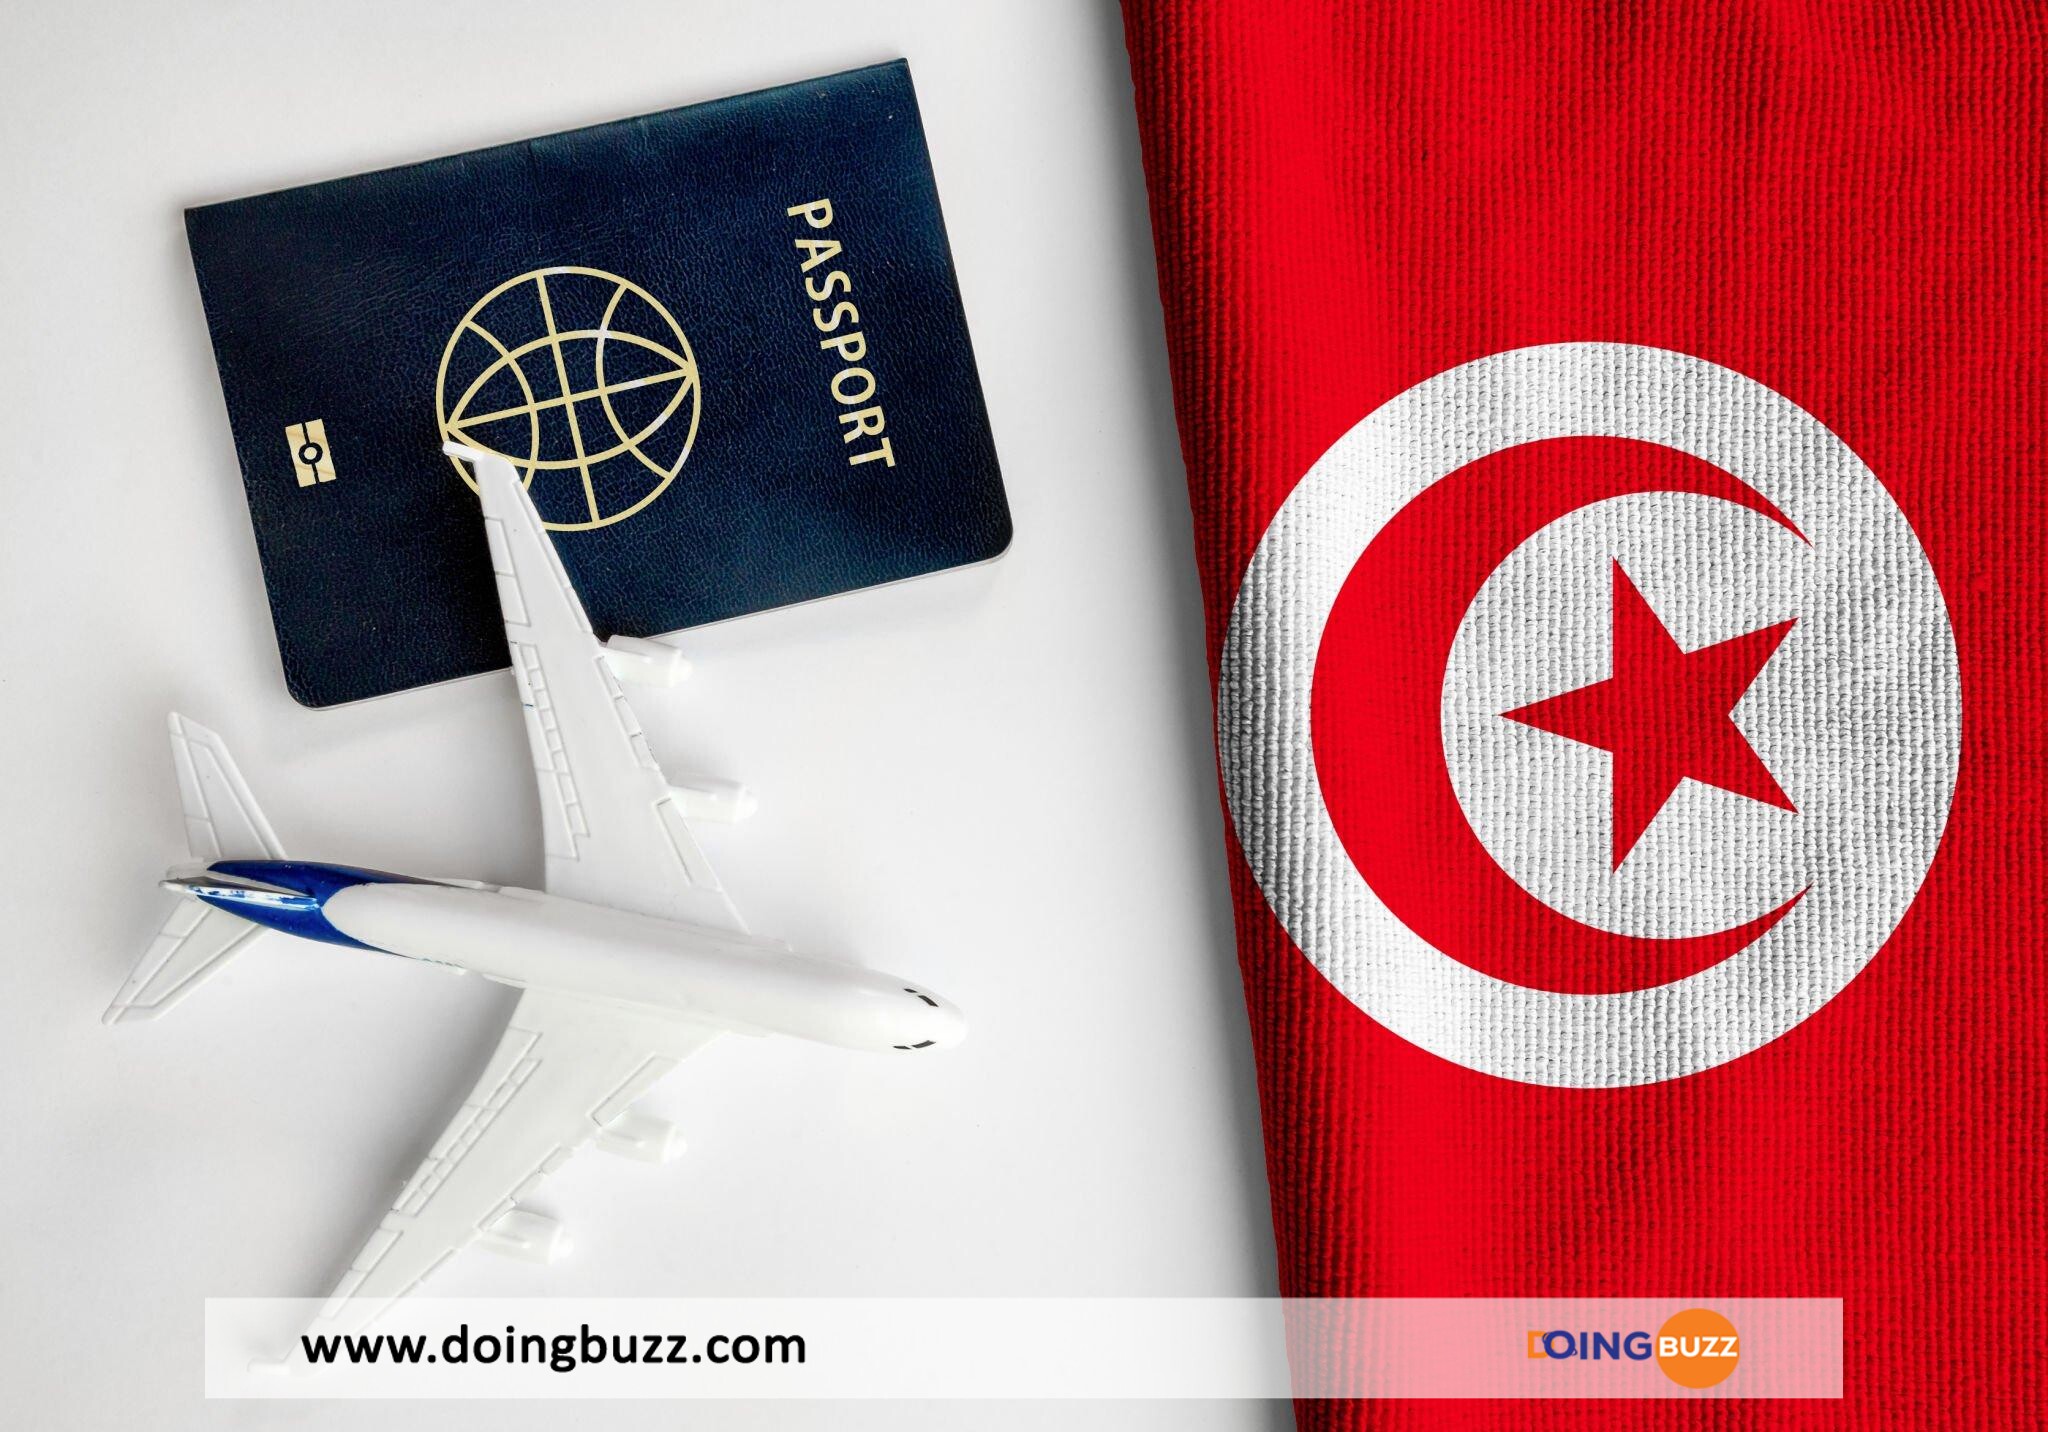 Procédure Pour Renouveler Son Passeport Tunisien Lorsqu’on Est À L’étranger